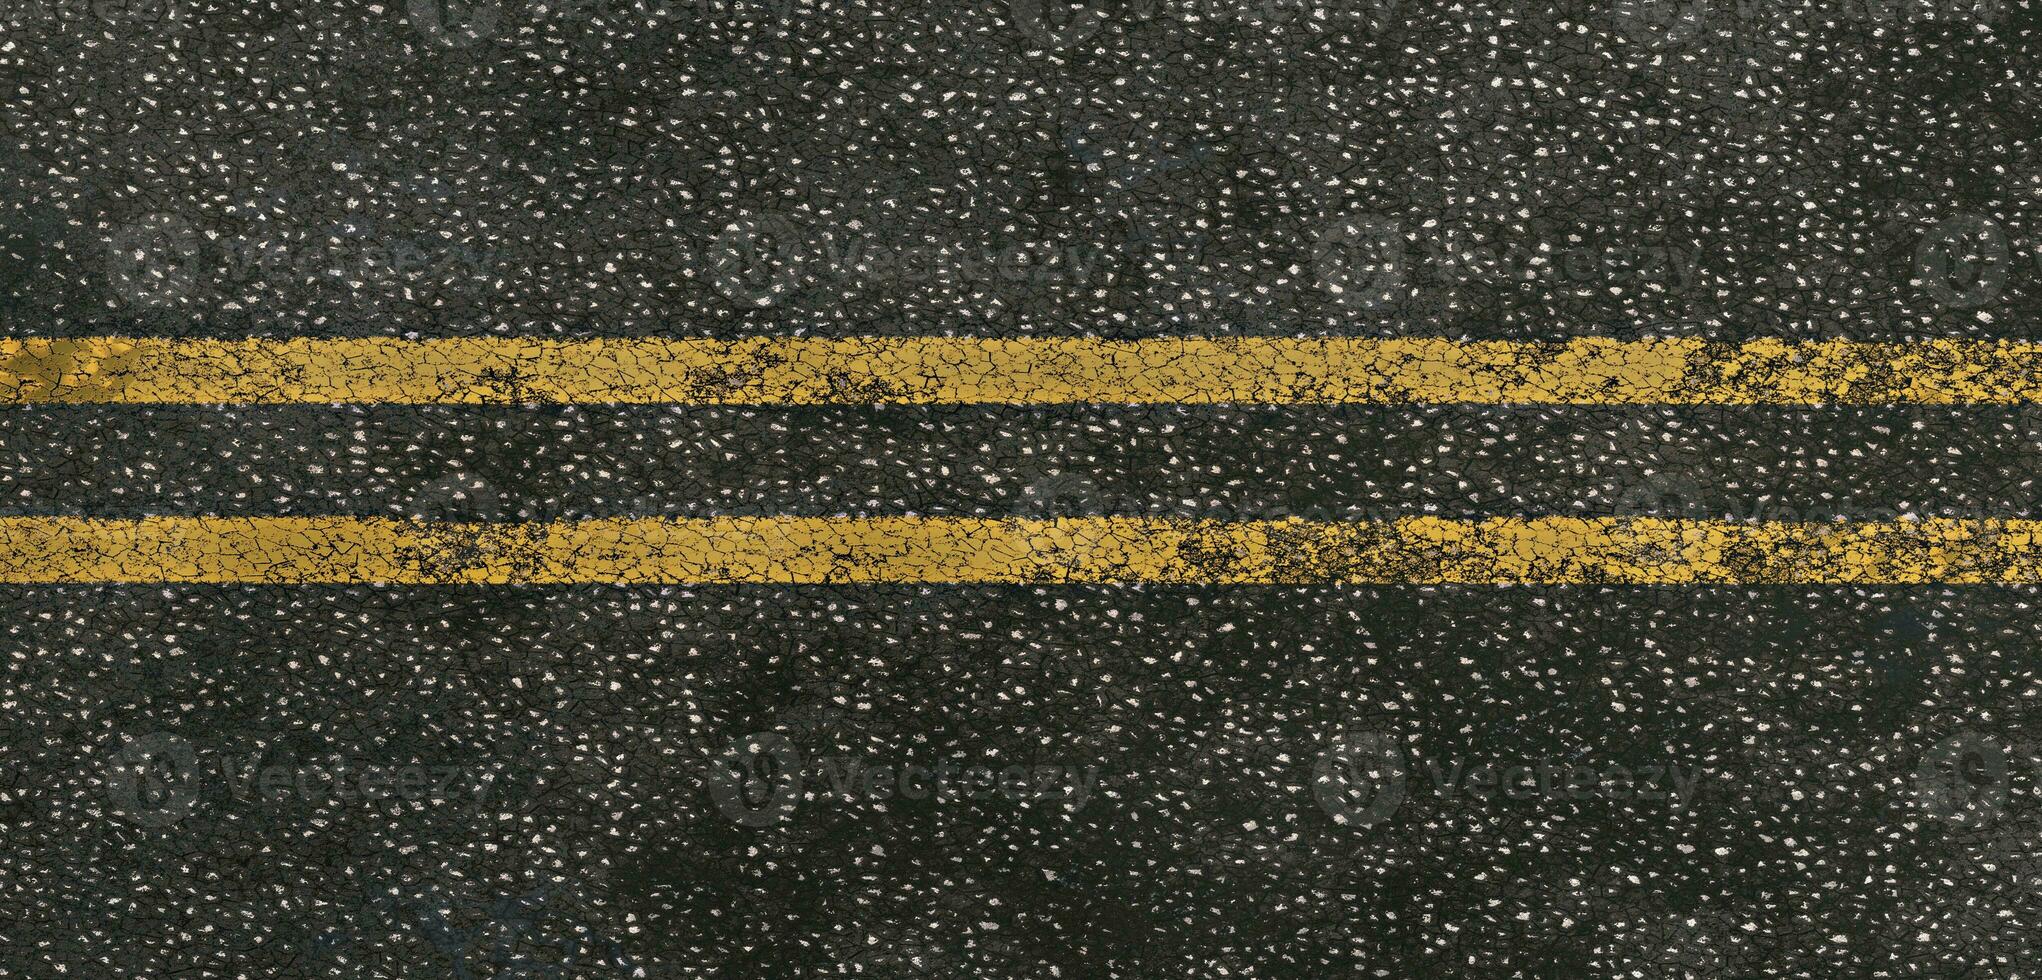 Contexte route surface asphalte voies et circulation lignes bitume surface 3d illustration photo